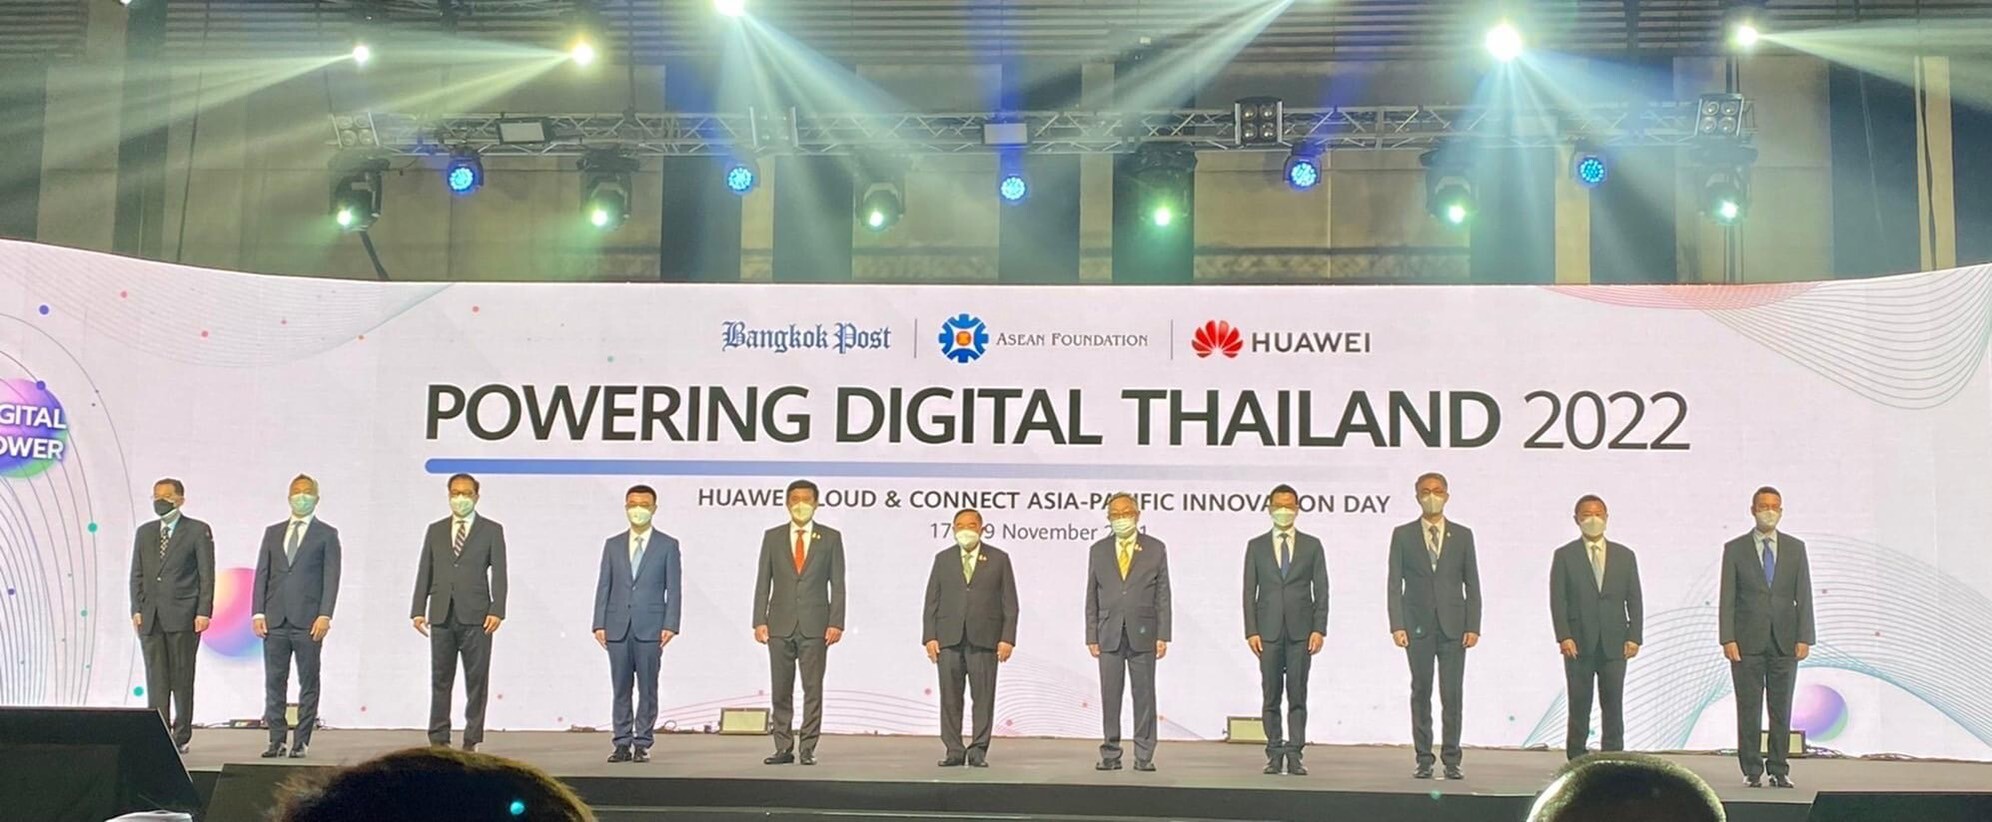 ทางศูนย์ฝึกอบรมอาเซียนด้านสังคมสงเคราะห์และสวัสดิการทางสังคม (ATCSW) เข้าร่วมงาน Powering Digital Thailand 2022 โชว์นวัตกรรมดิจิทัลช่วยฟื้นตัวเศรษฐกิจไทย